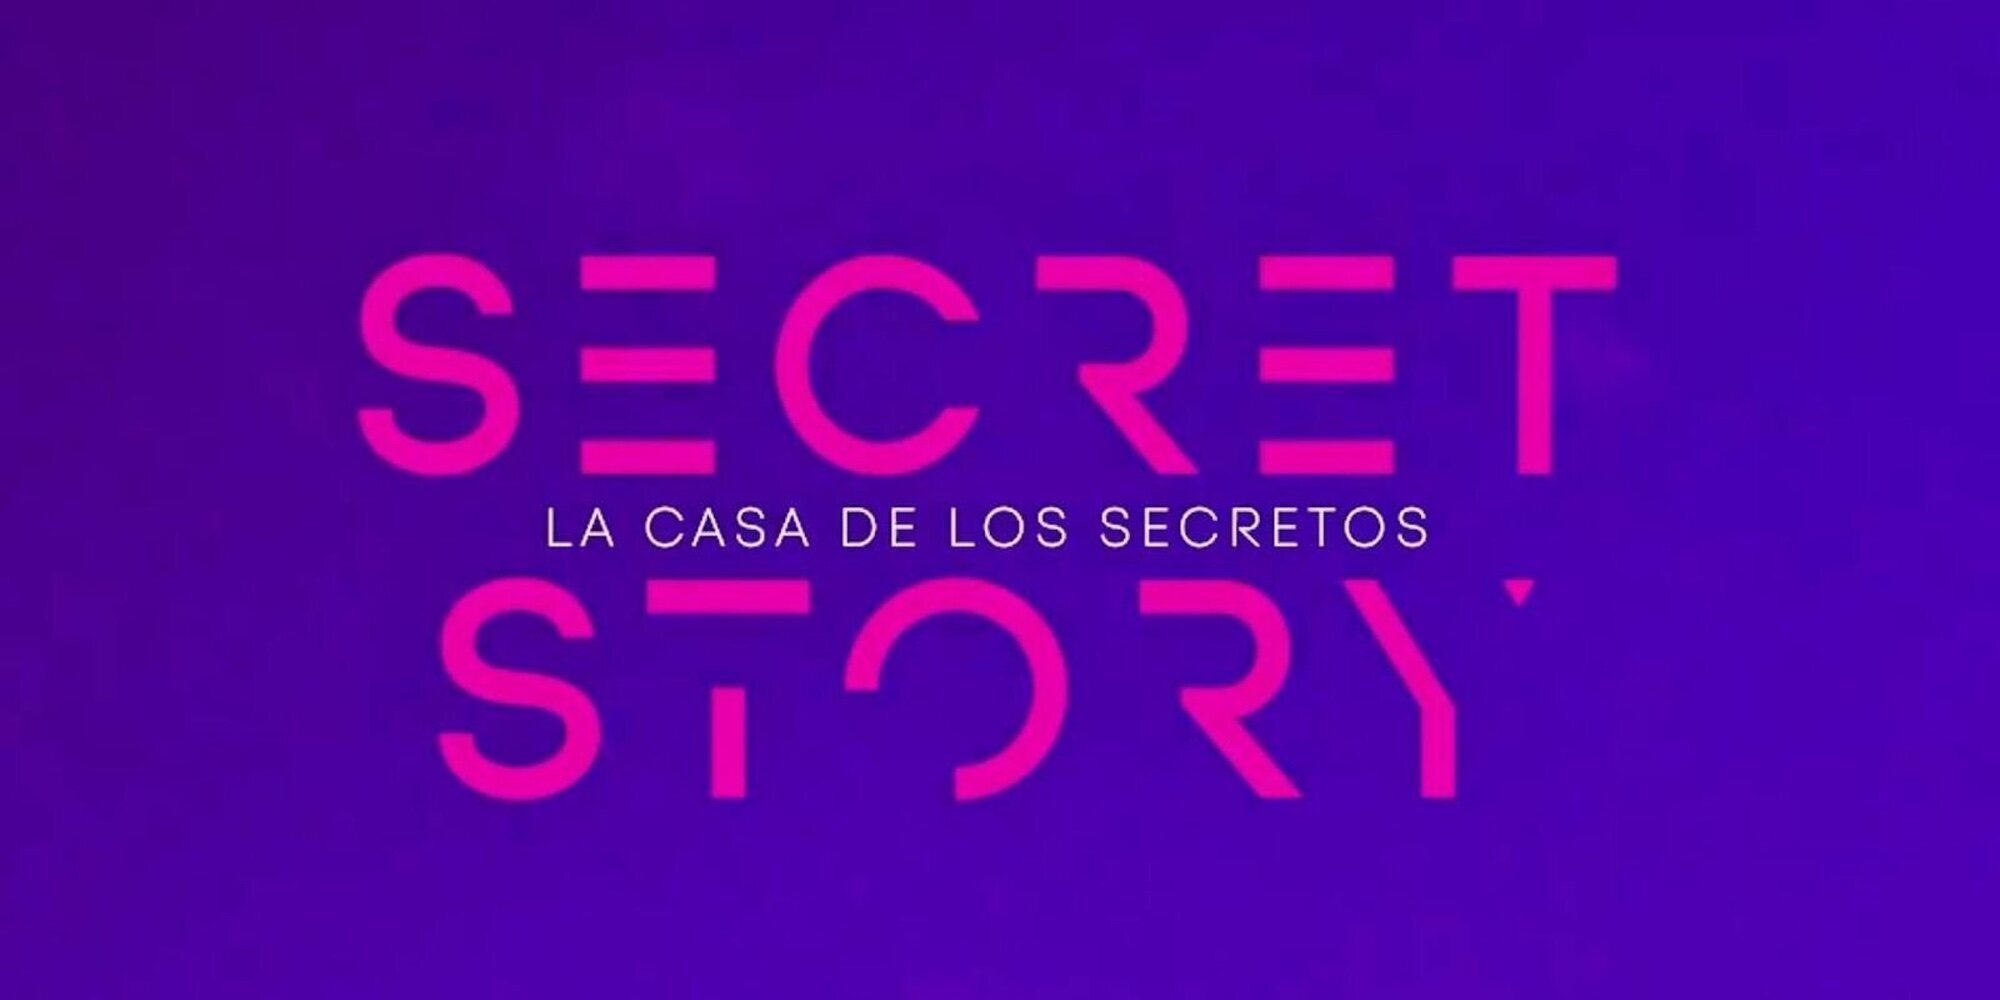 Un error en el recuento de puntos obliga a 'Secret Story' a modificar la lista de nominados